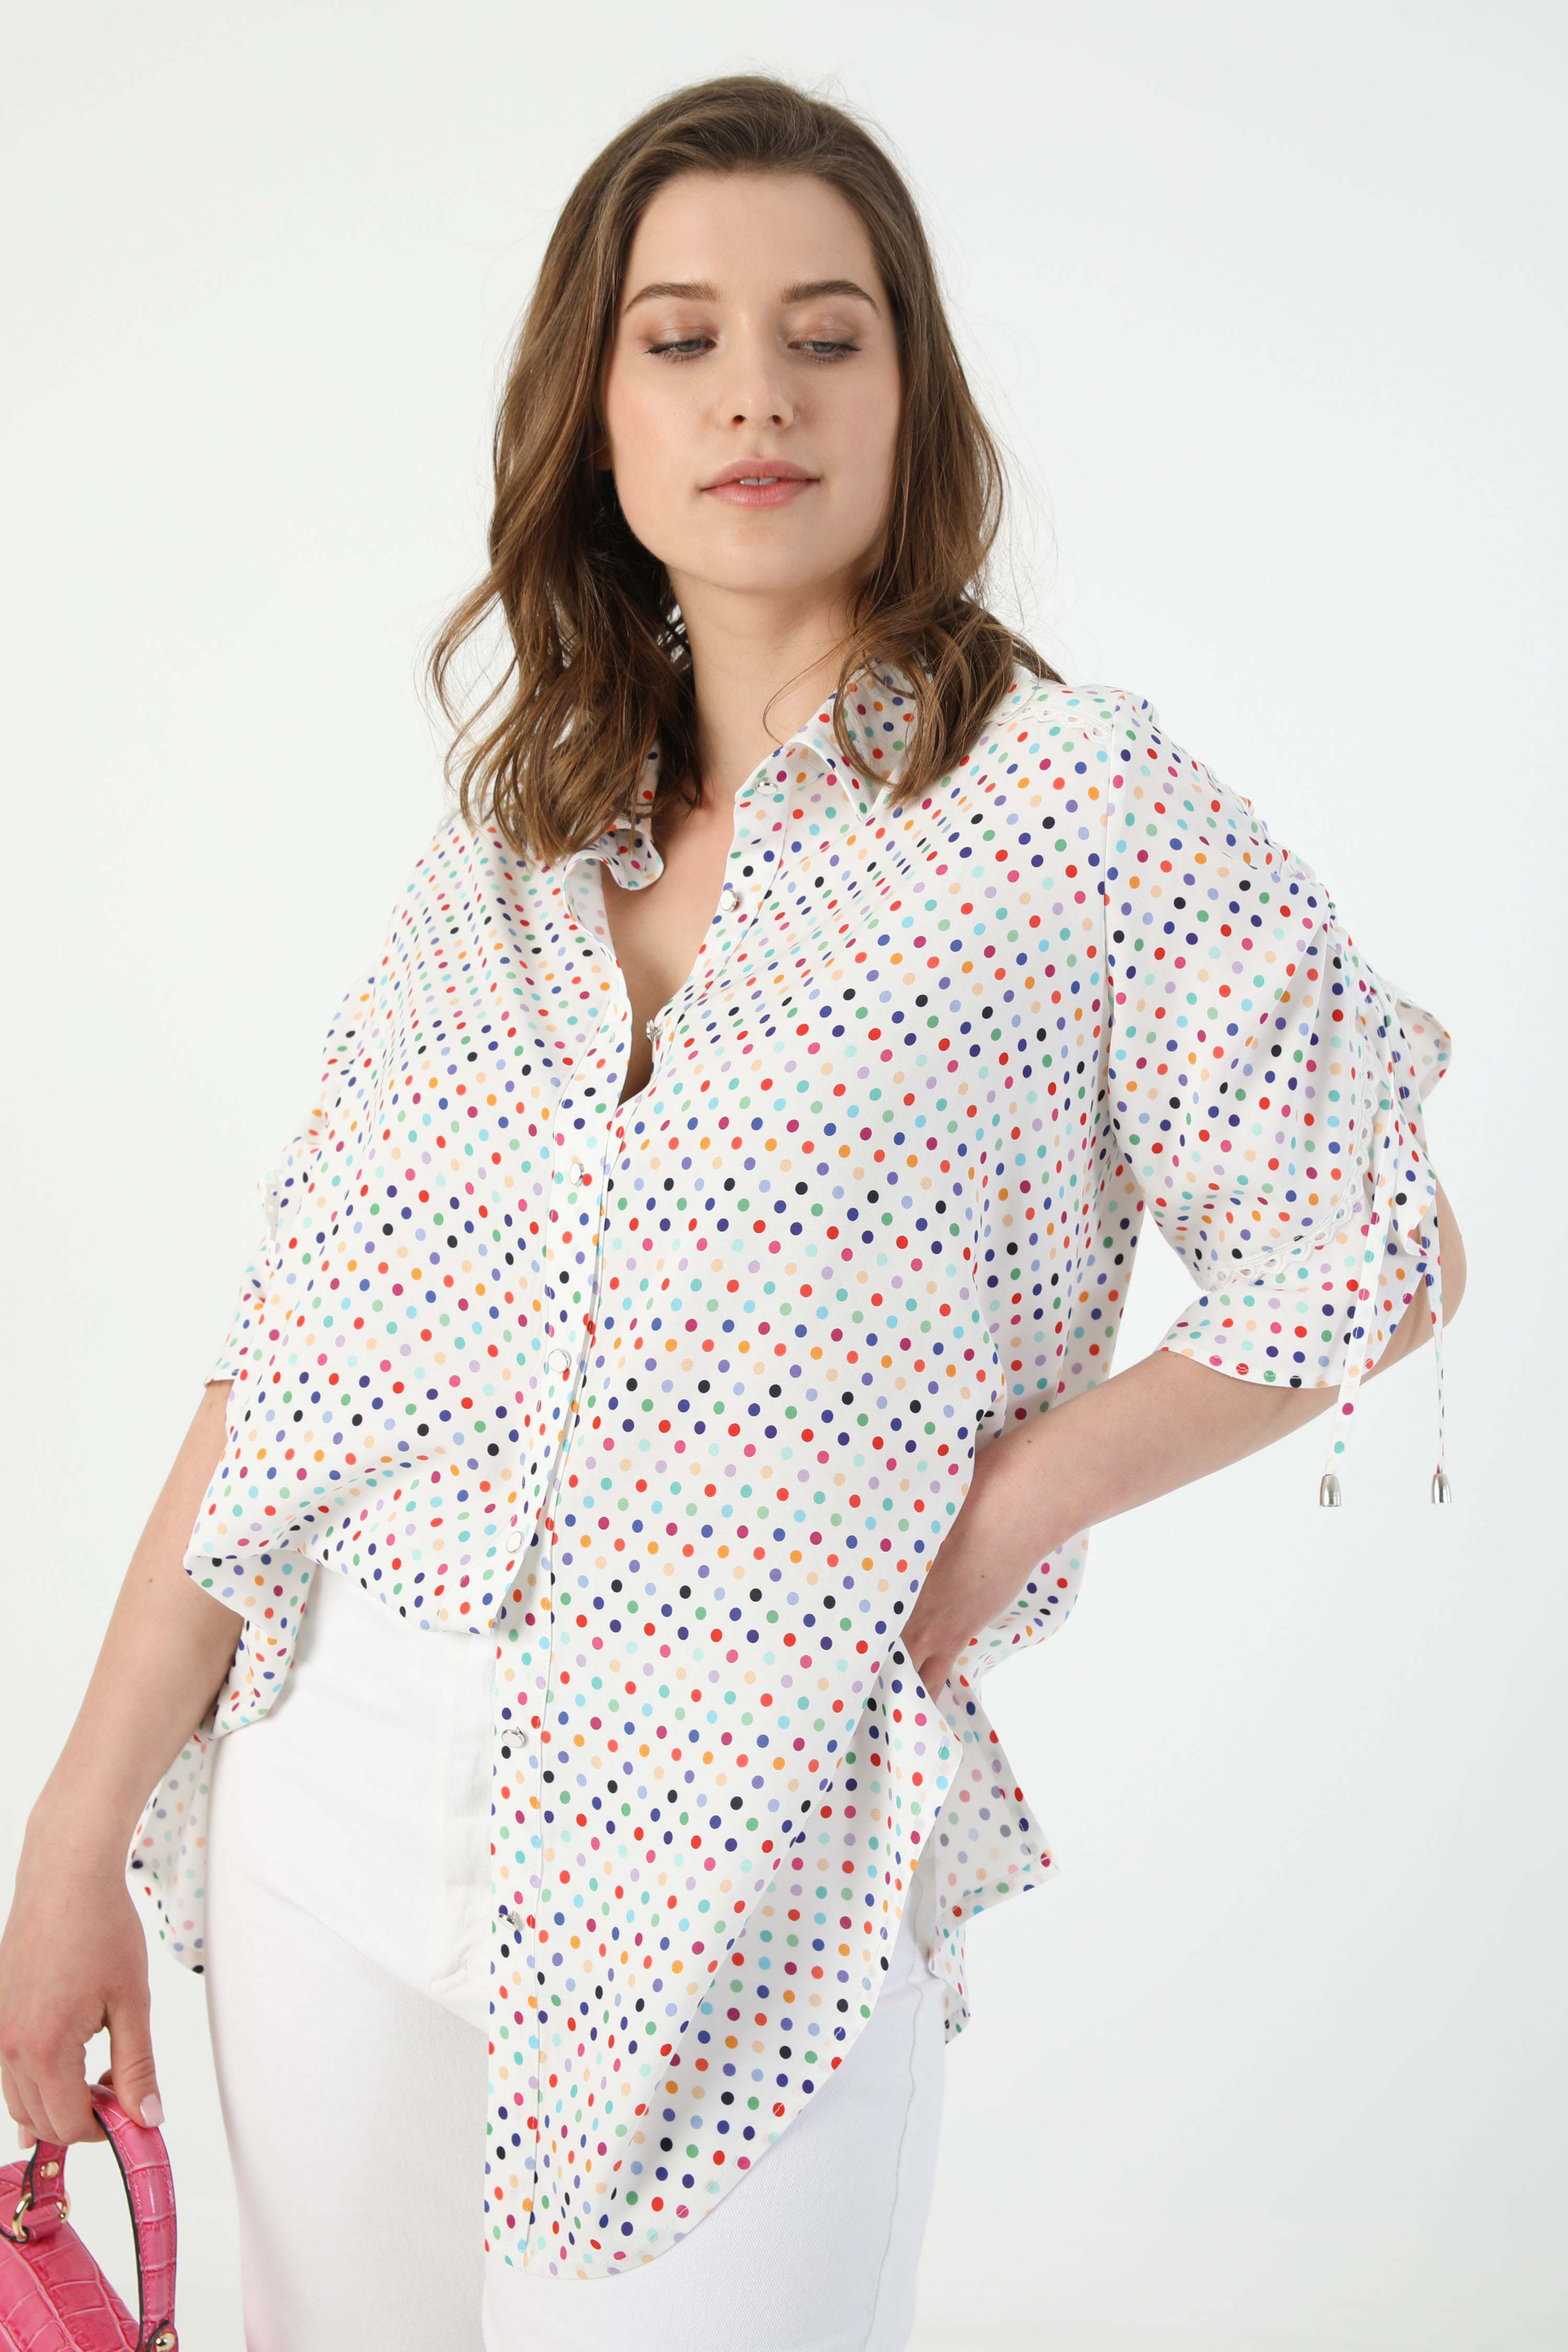 Multicolored polka dot shirt (shipping 15/20 May)